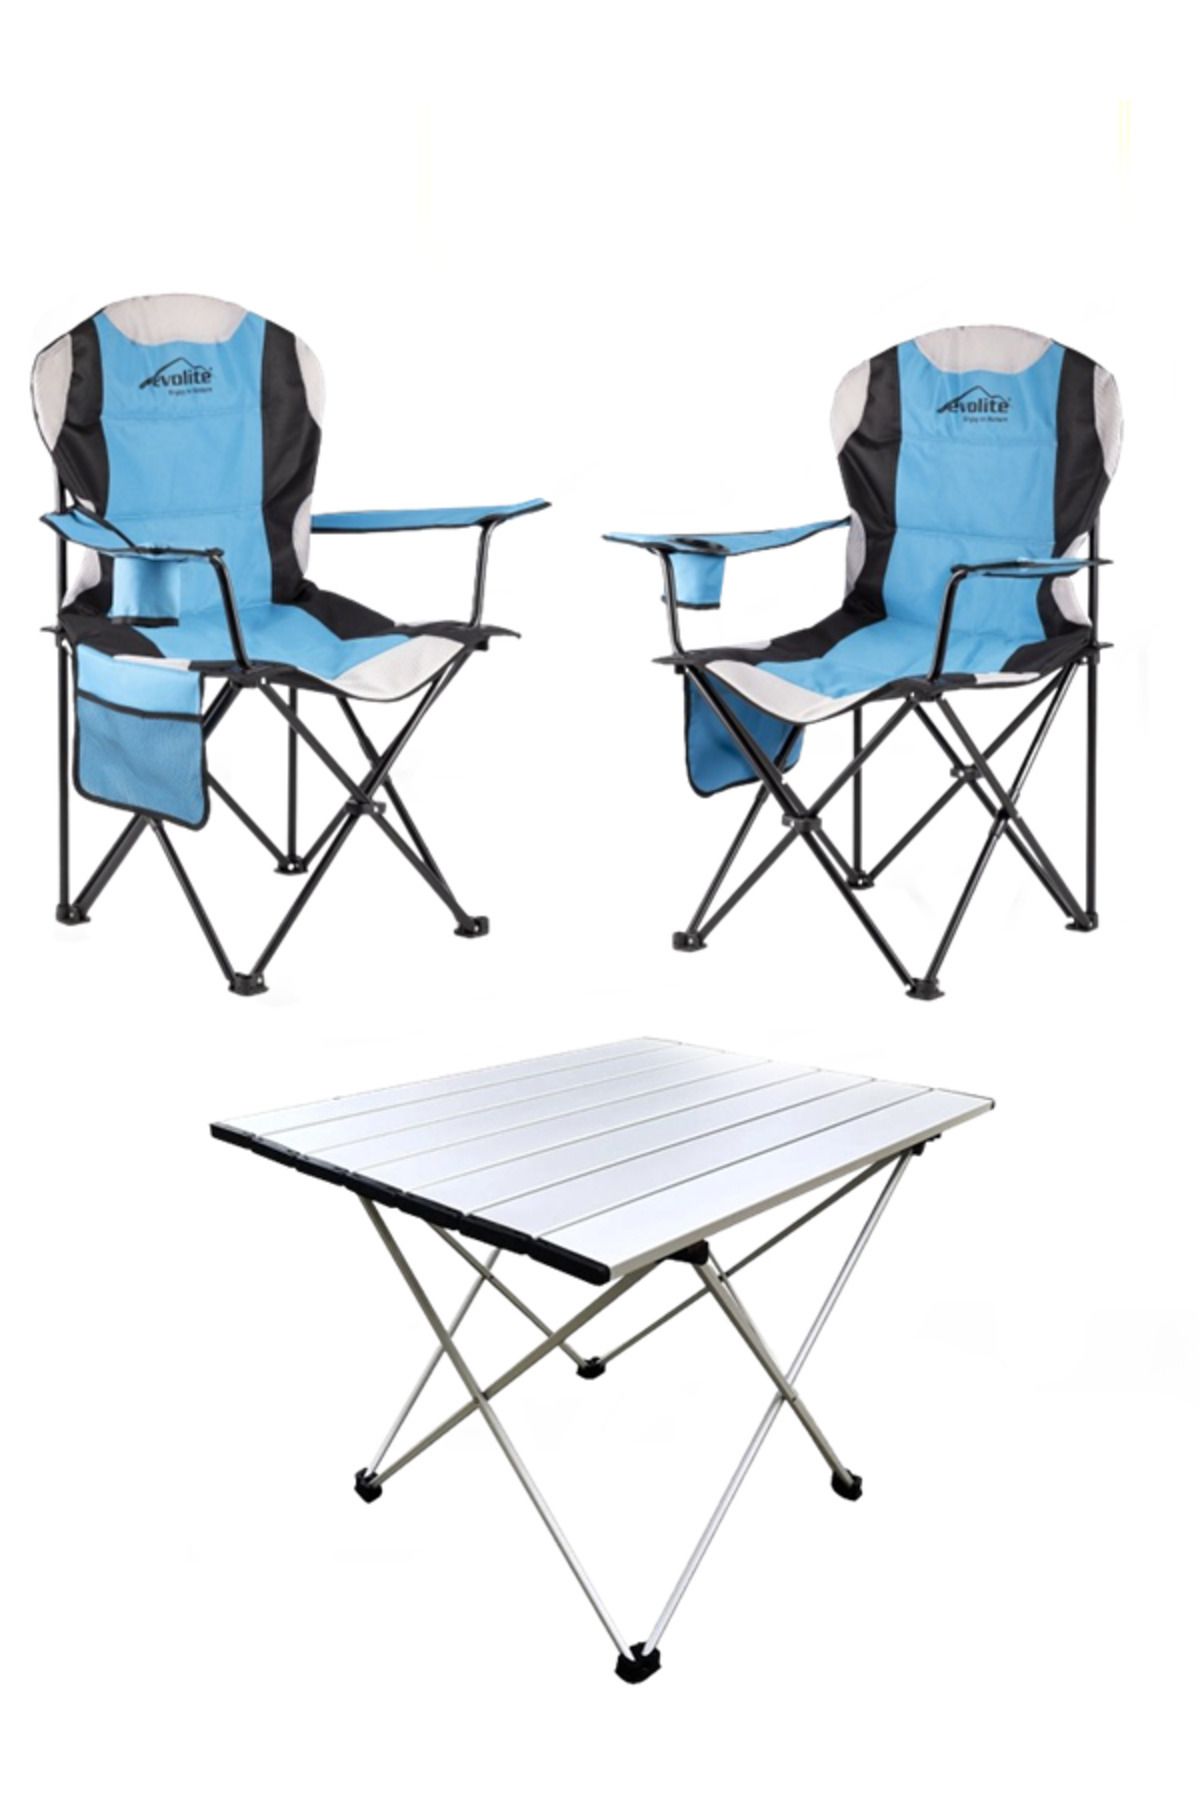 gaman Dayanıklı Evolite Kamp Sandalyesi 2 Sandalye 1 Masası Set Katlanabilir Özel Kılıfında Kamp Seti